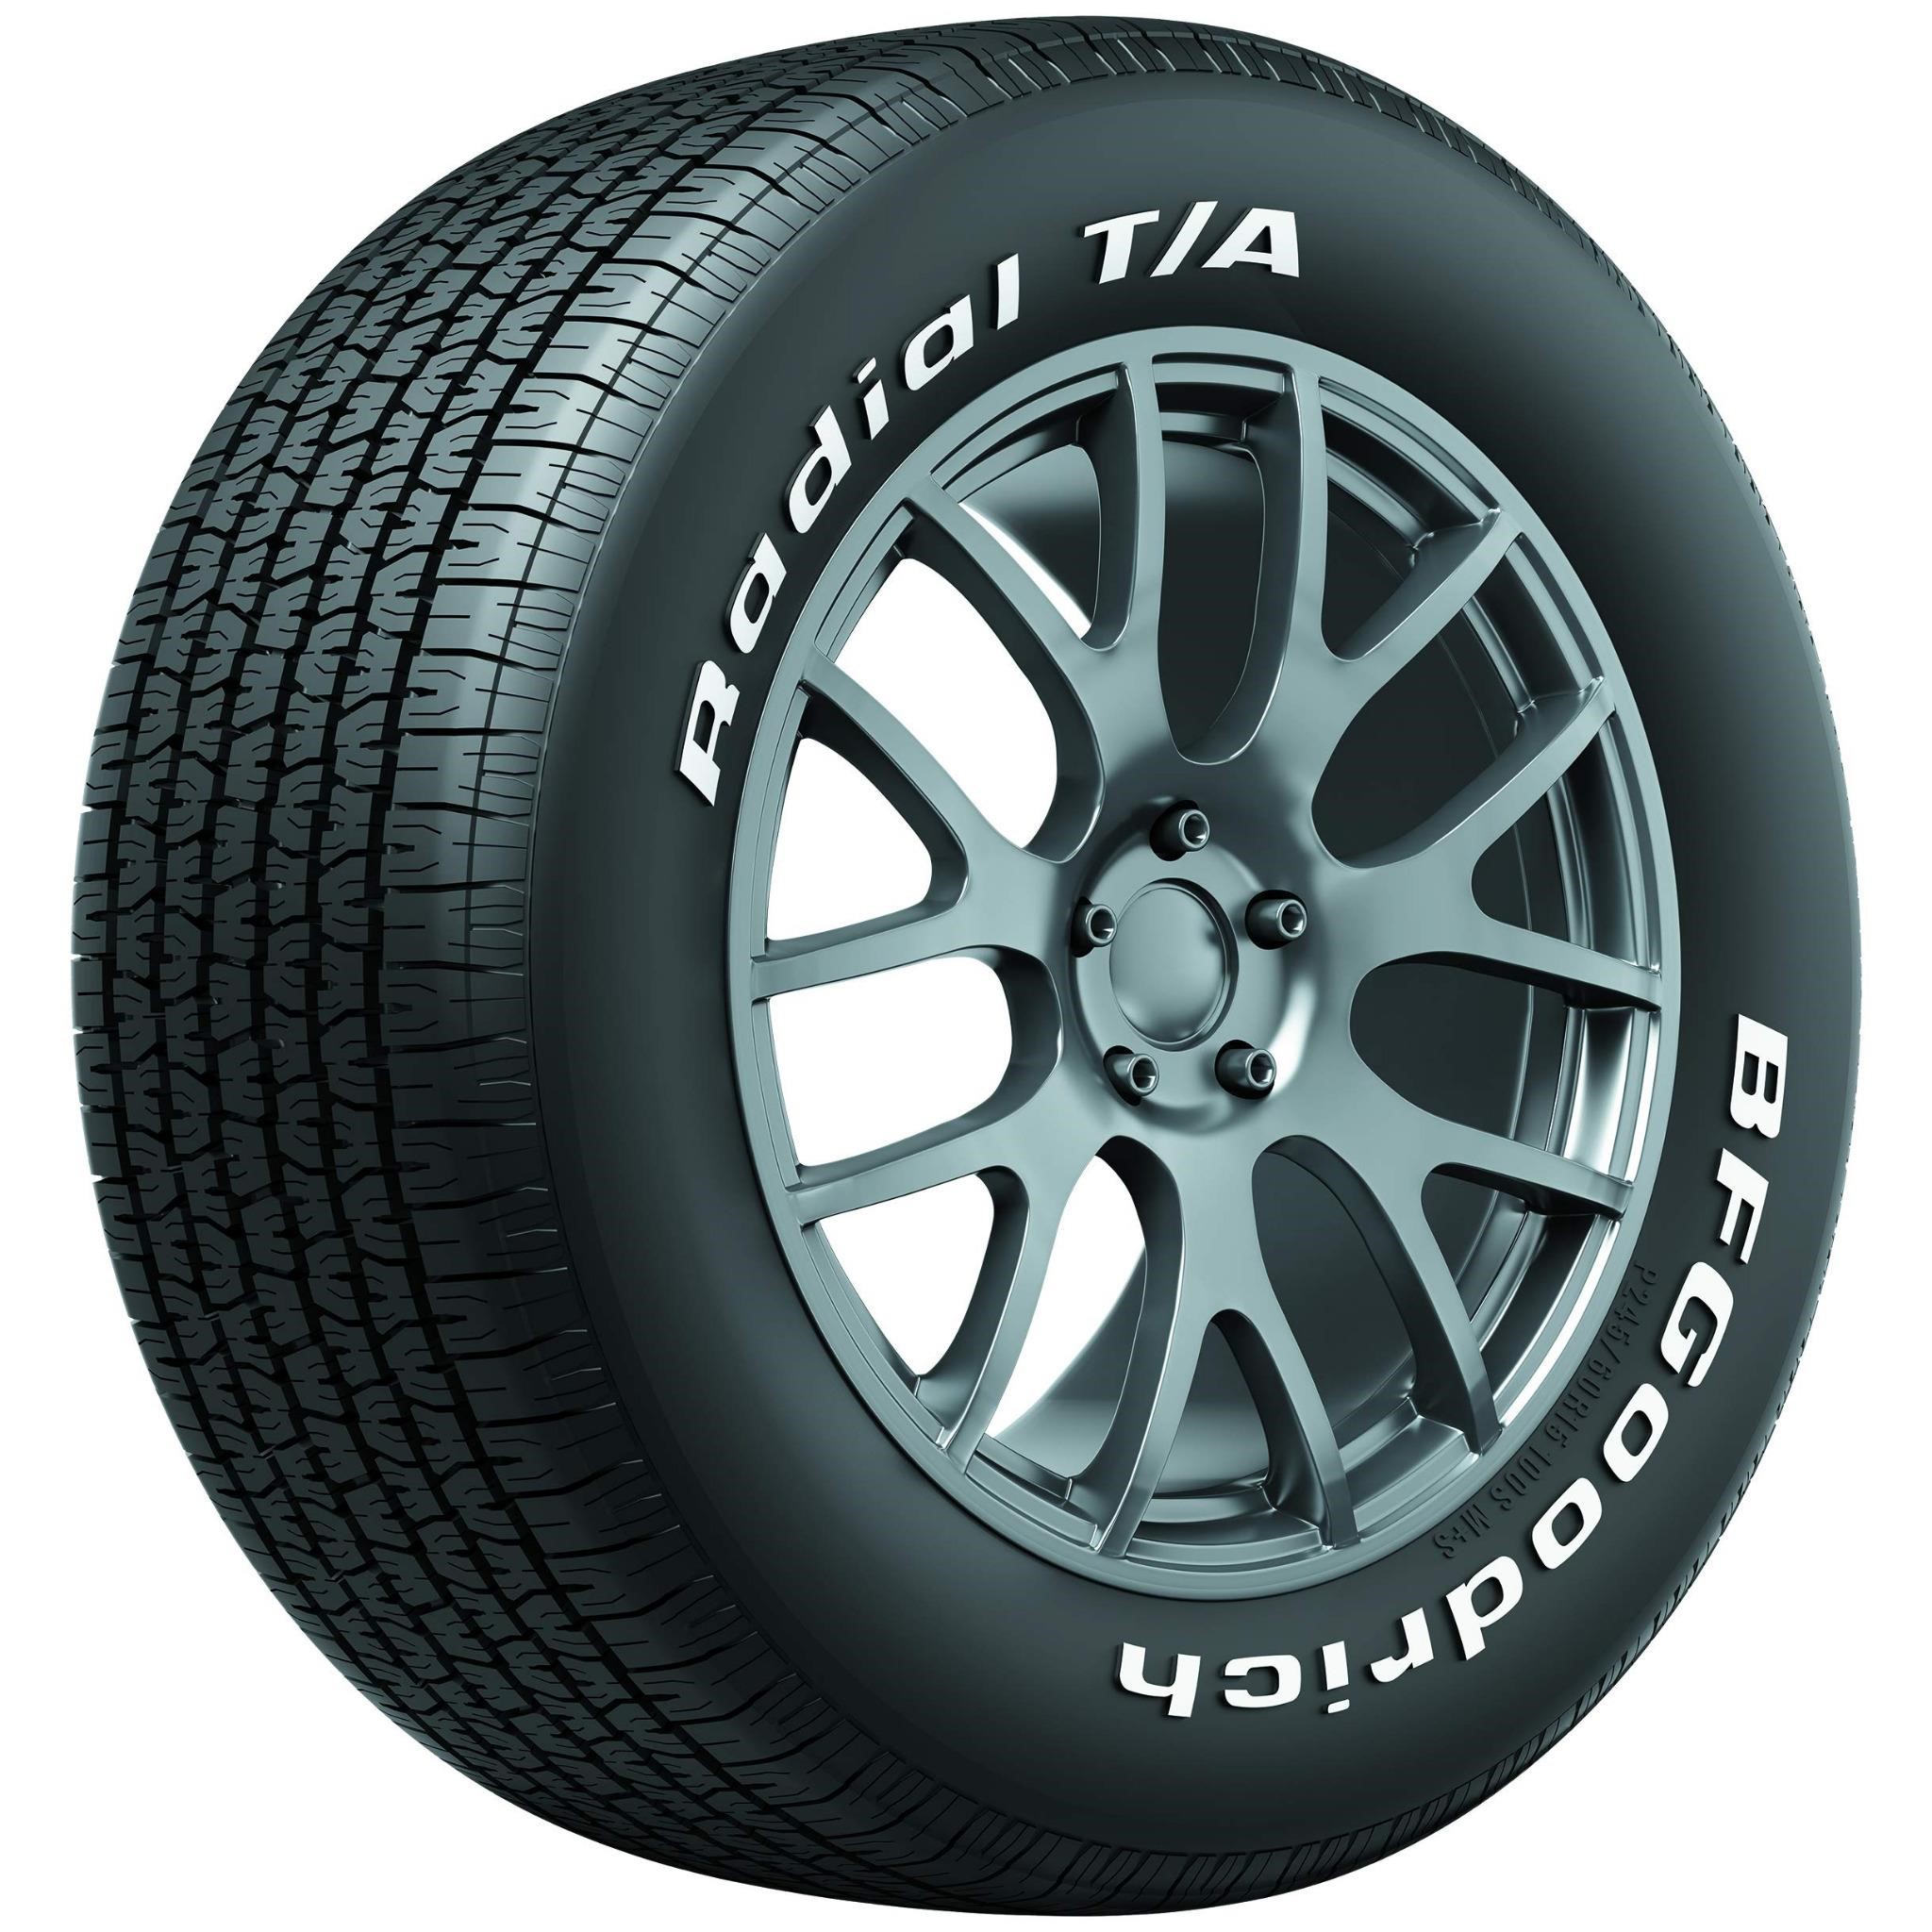 BFGoodrich Radial T/A All Season Car Tire for